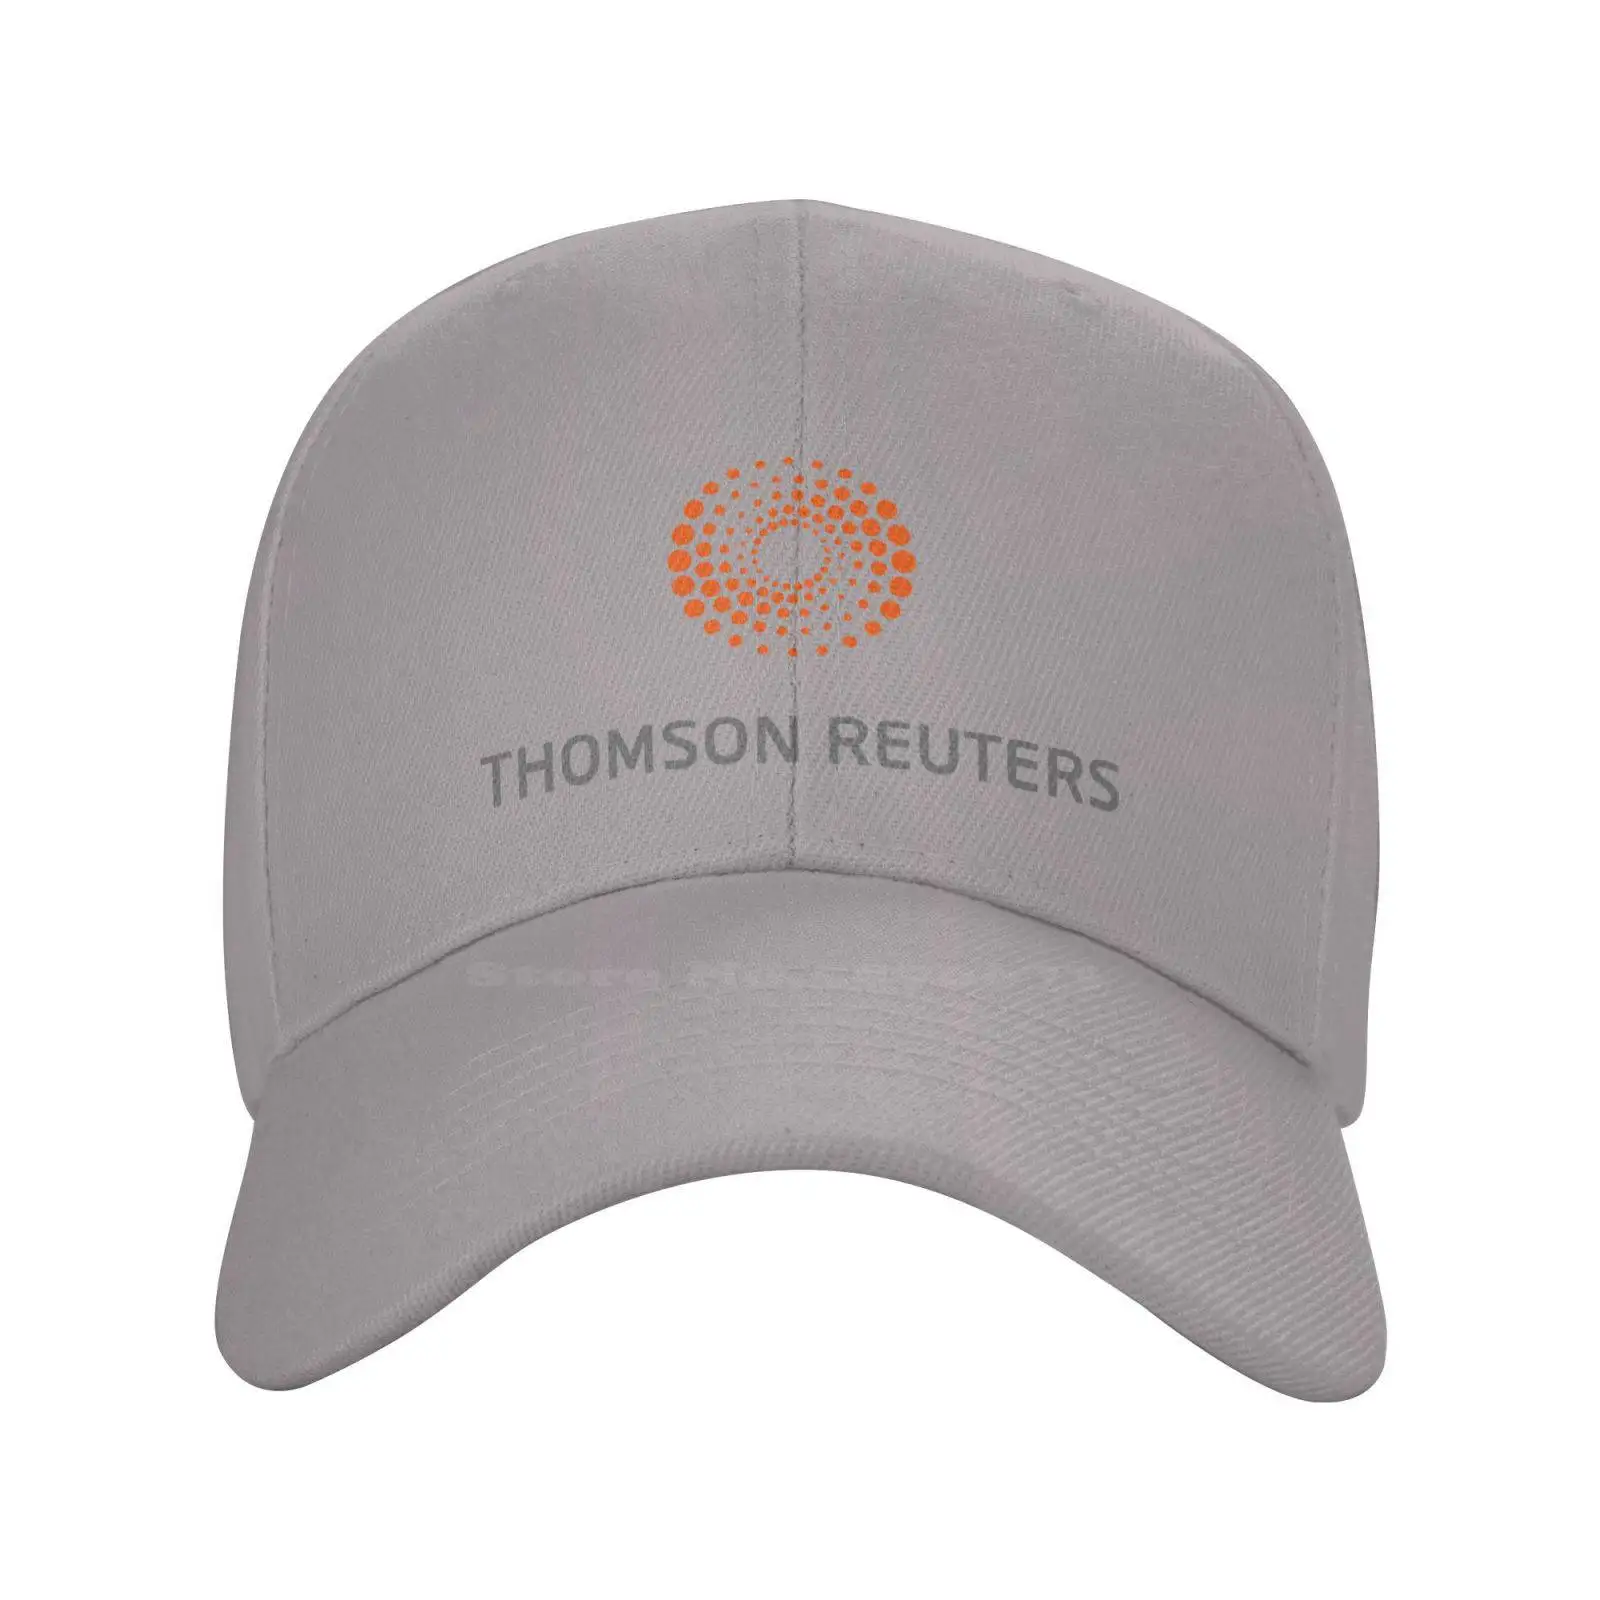 Thomson Reuters Logotipo Gráfico Impreso el Logotipo de la Marca de Alta calidad del Dril de algodón gorra de Punto sombrero de la gorra de Béisbol Imagen 0